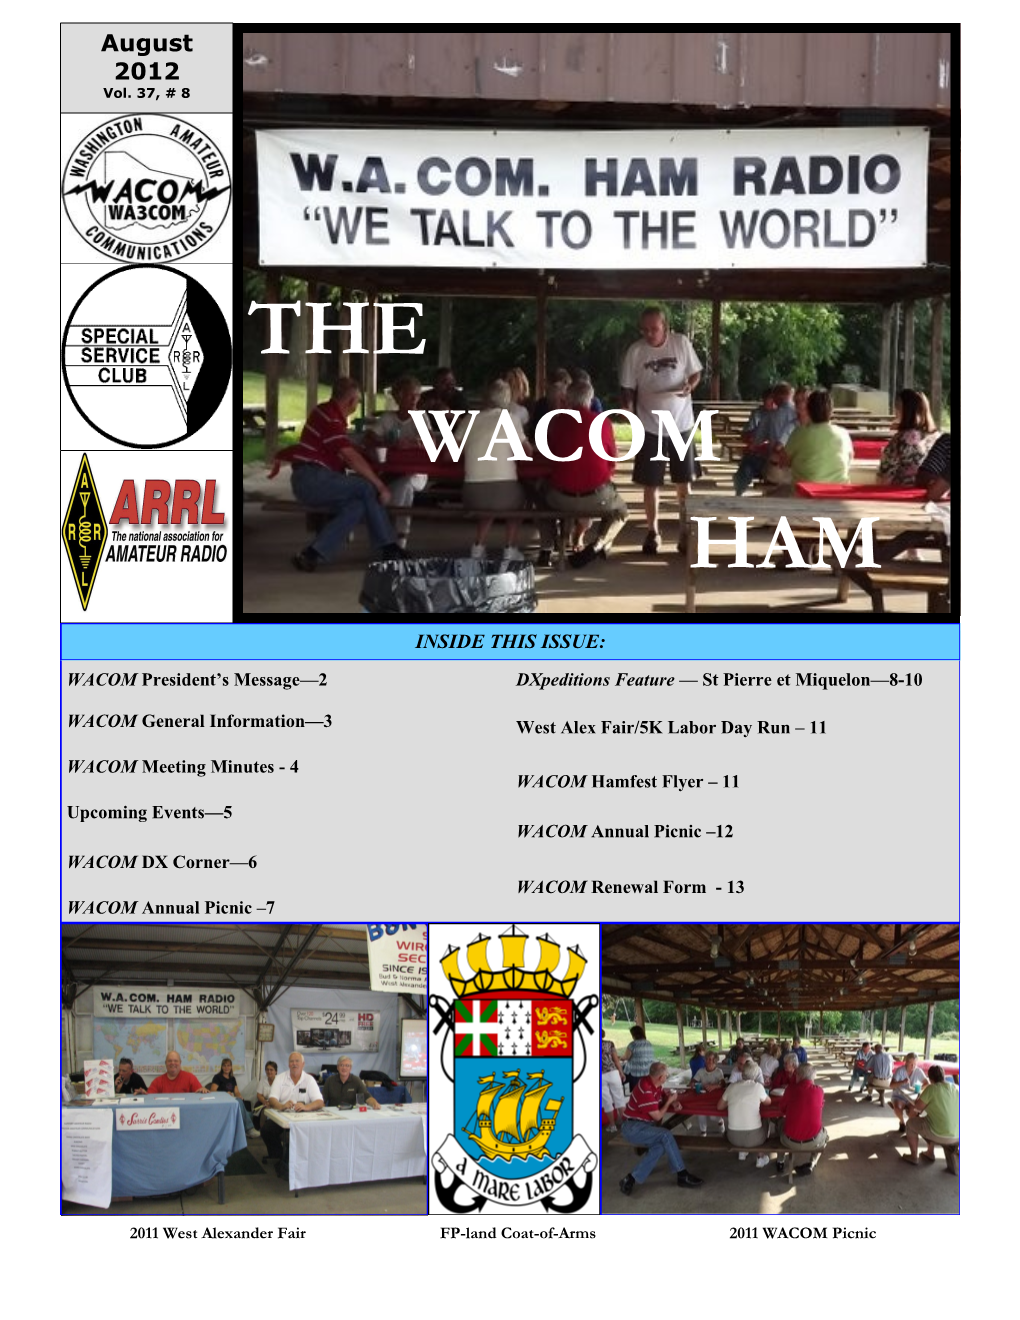 The Wacom Ham